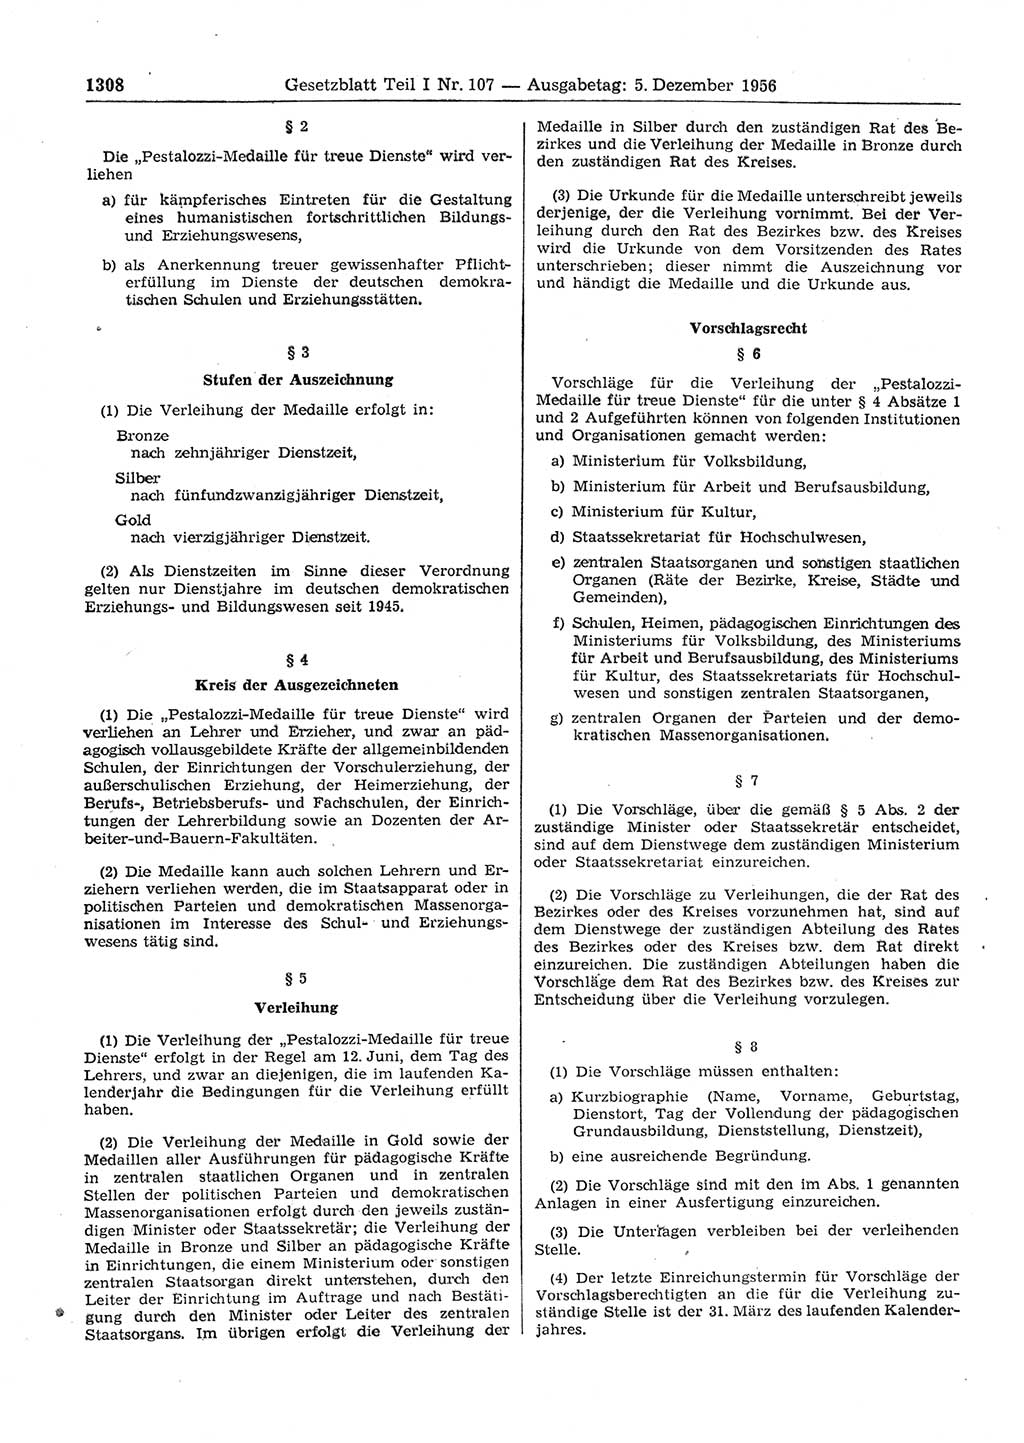 Gesetzblatt (GBl.) der Deutschen Demokratischen Republik (DDR) Teil Ⅰ 1956, Seite 1308 (GBl. DDR Ⅰ 1956, S. 1308)